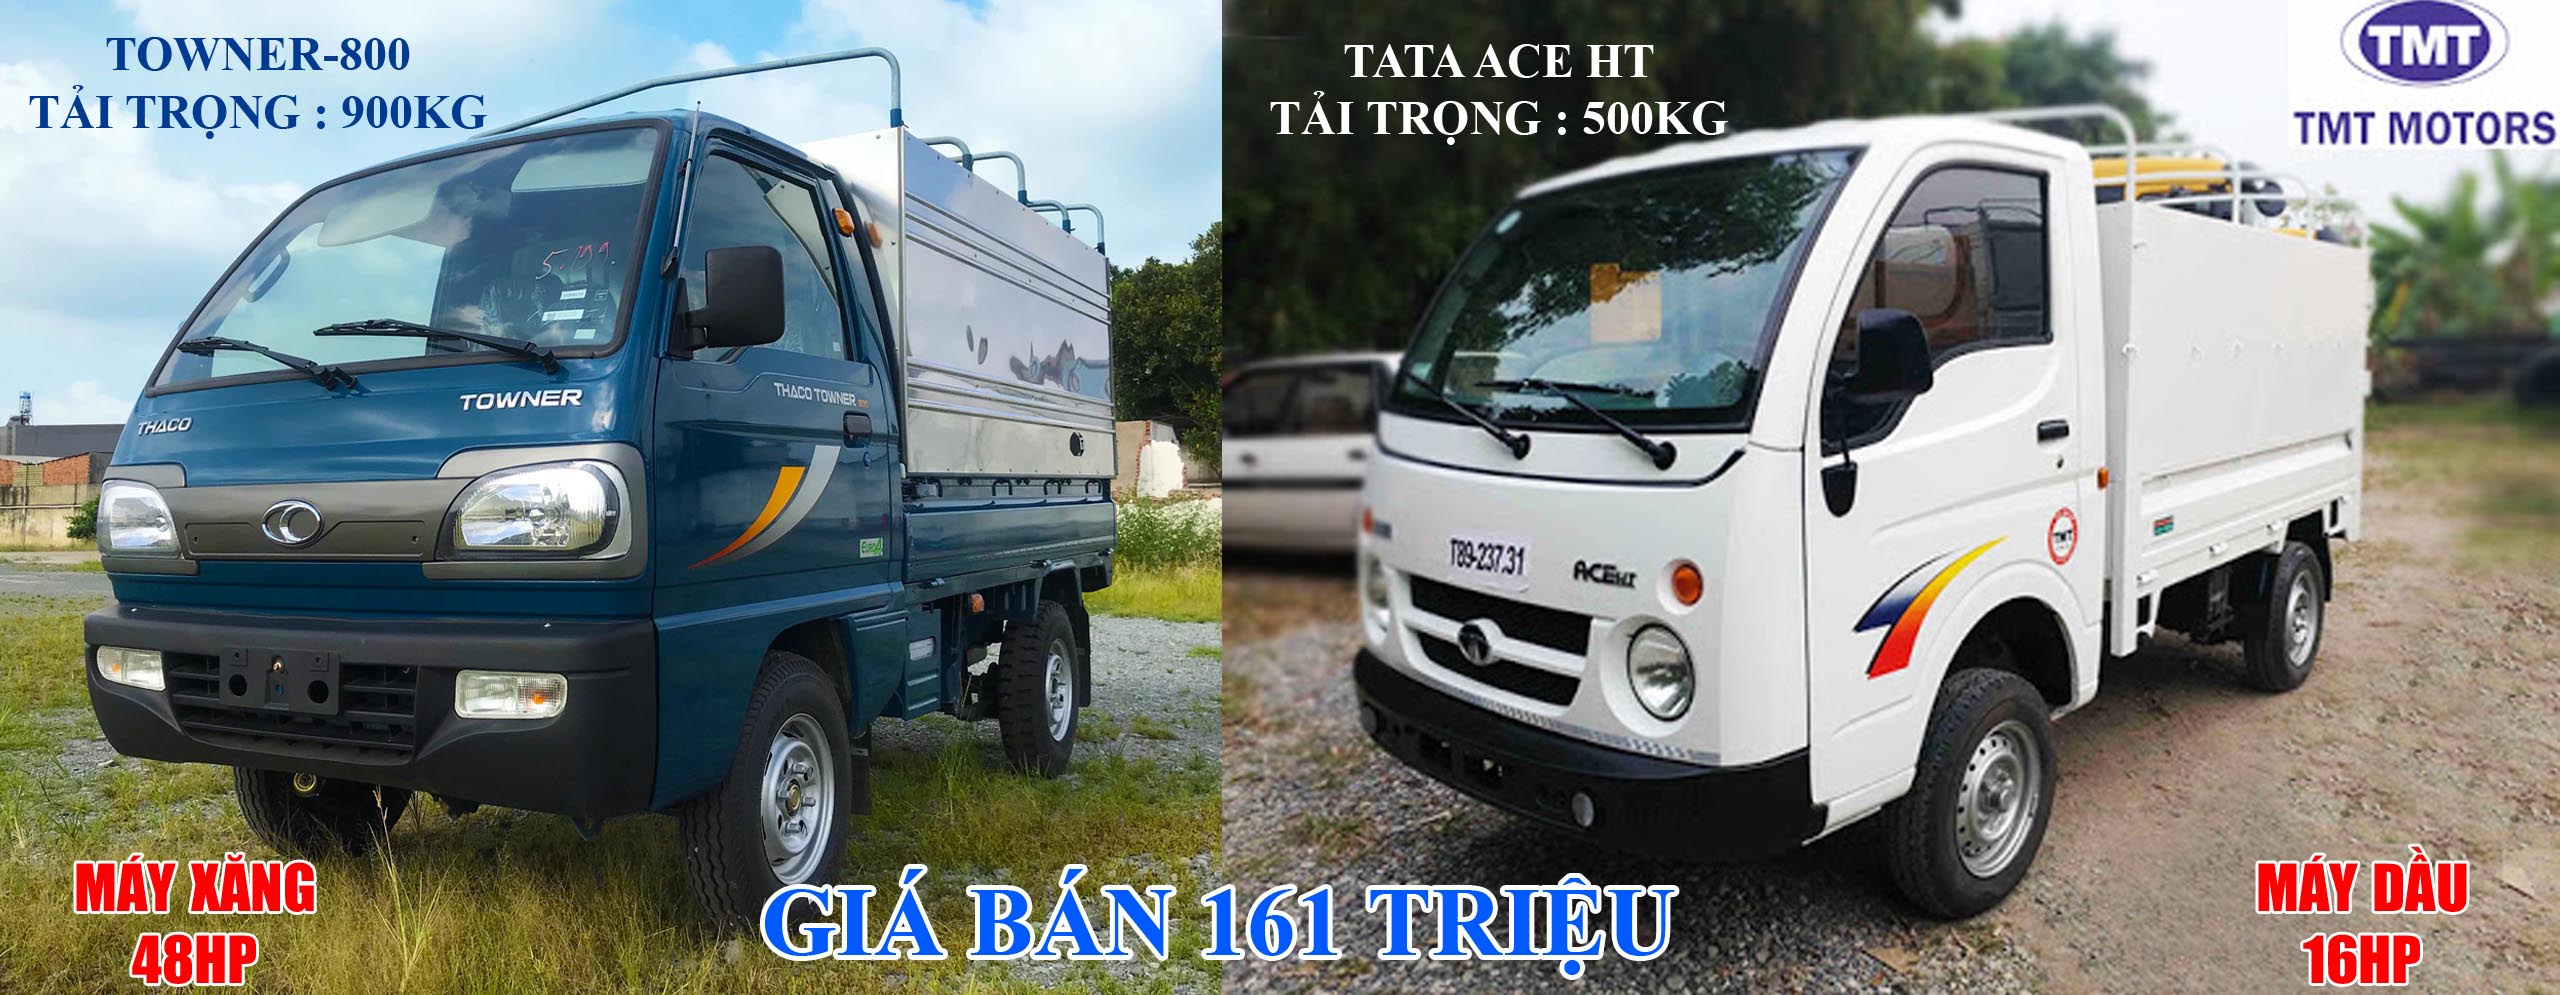 So sánh xe tải TATA và Towner 800